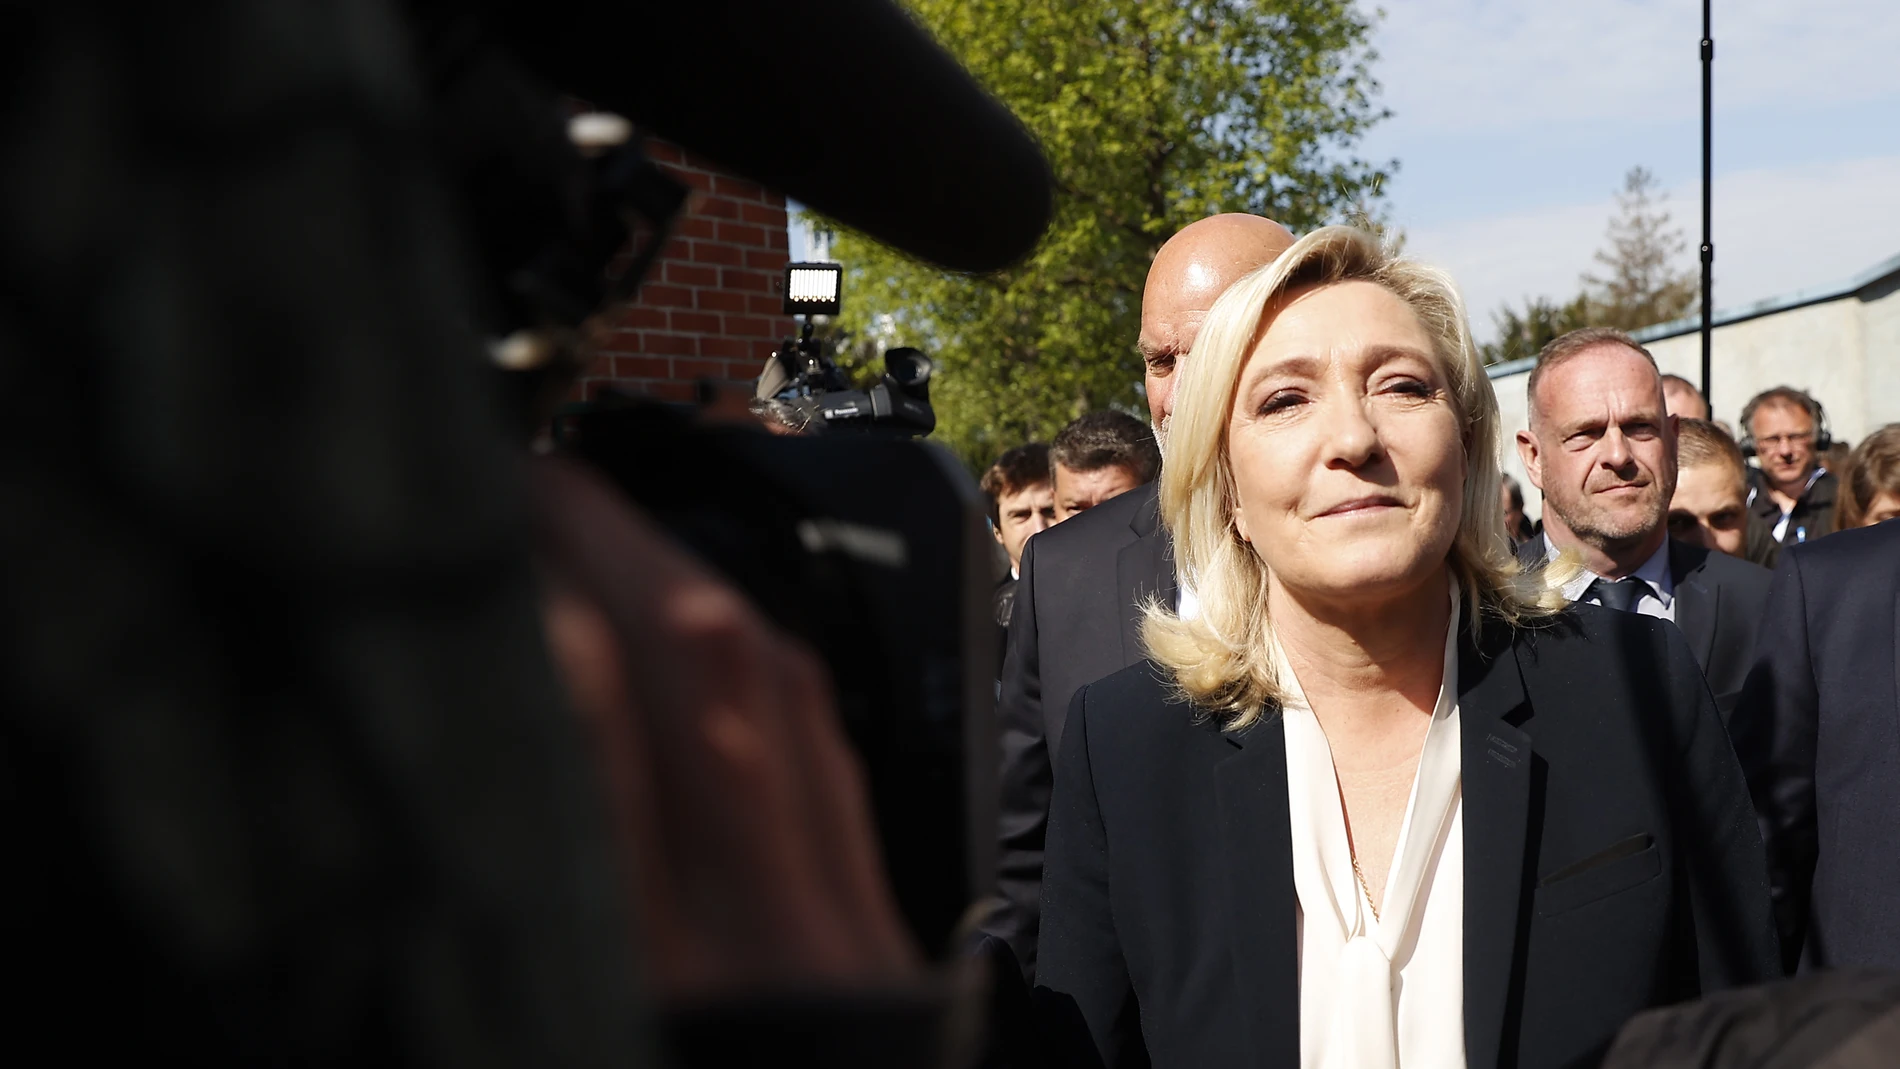 Le Pen reconoce la derrota en las elecciones francesas y avisa: "Millones de compatriotas han apostado por el cambio"